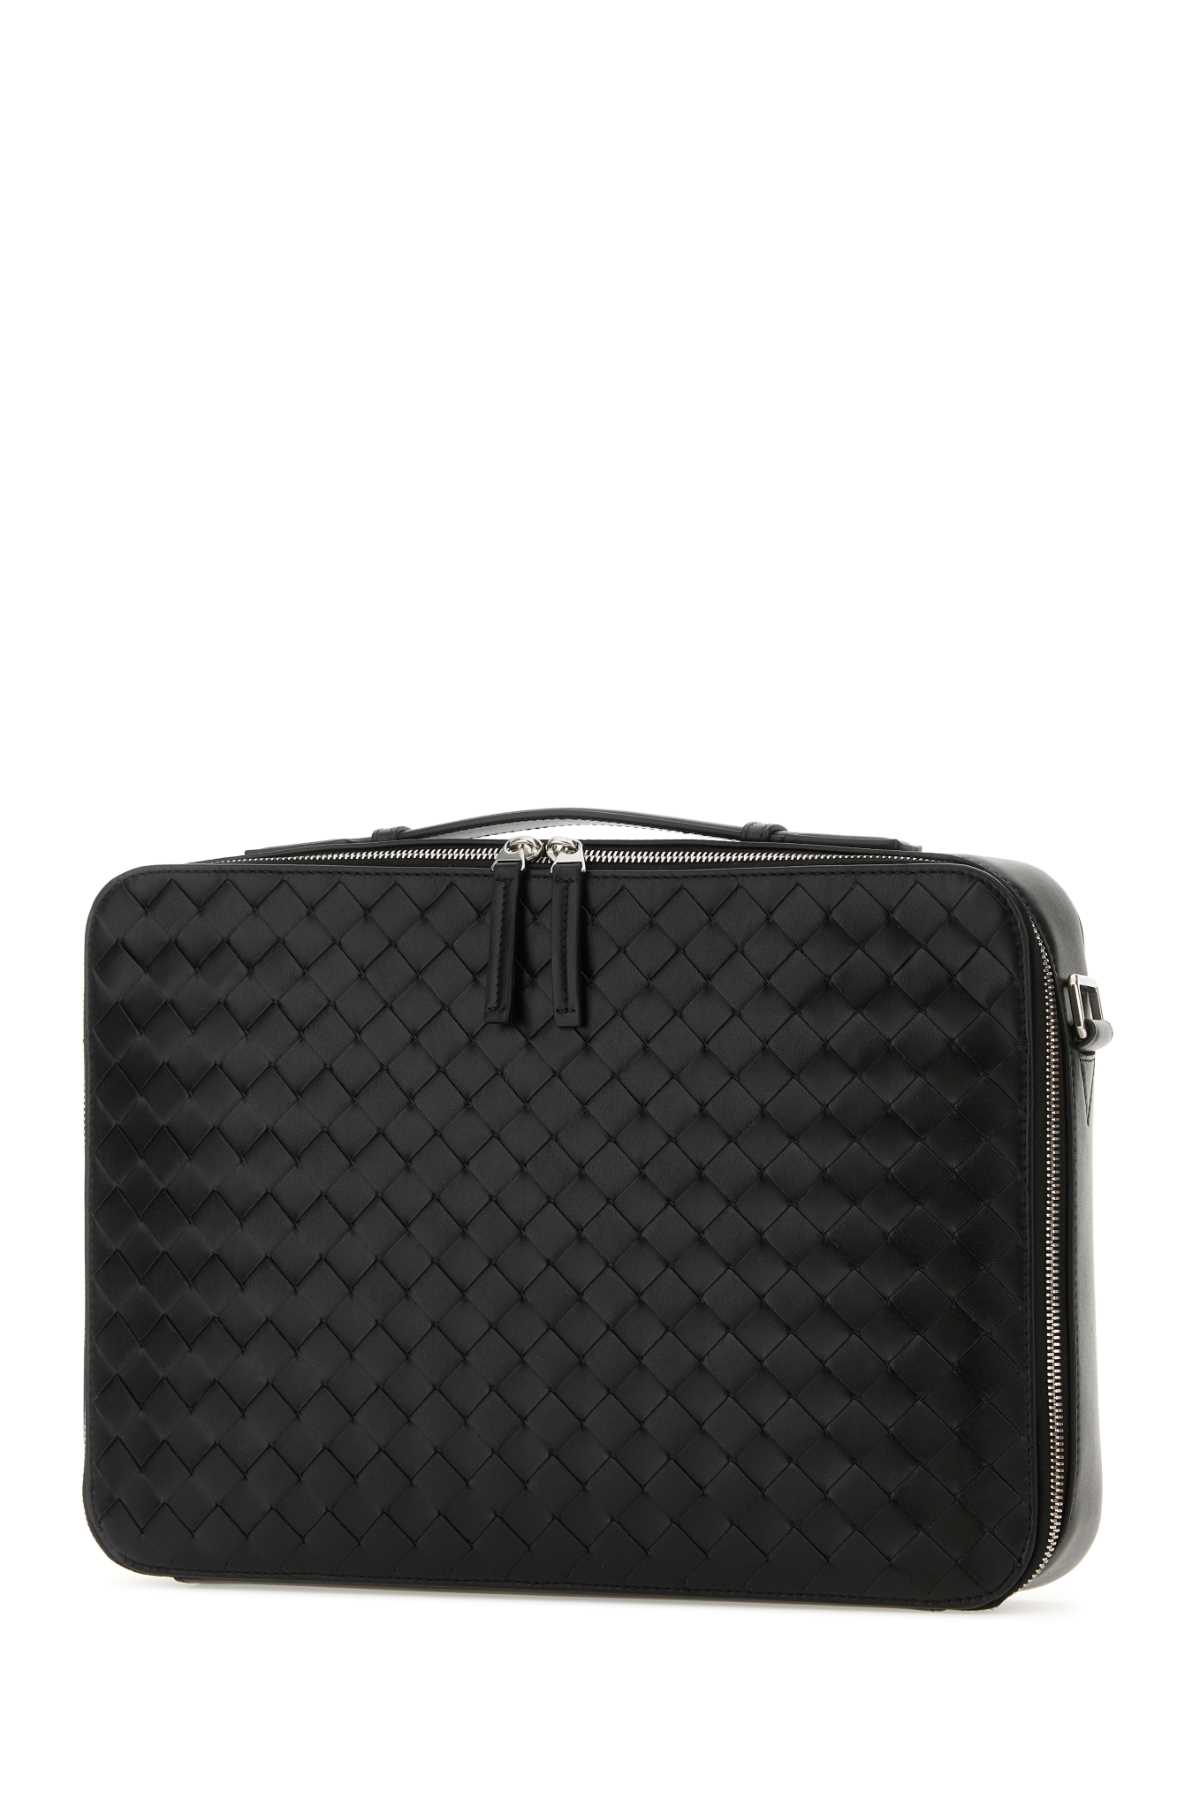 Shop Bottega Veneta Black Leather Getaway Briefcase In Blk